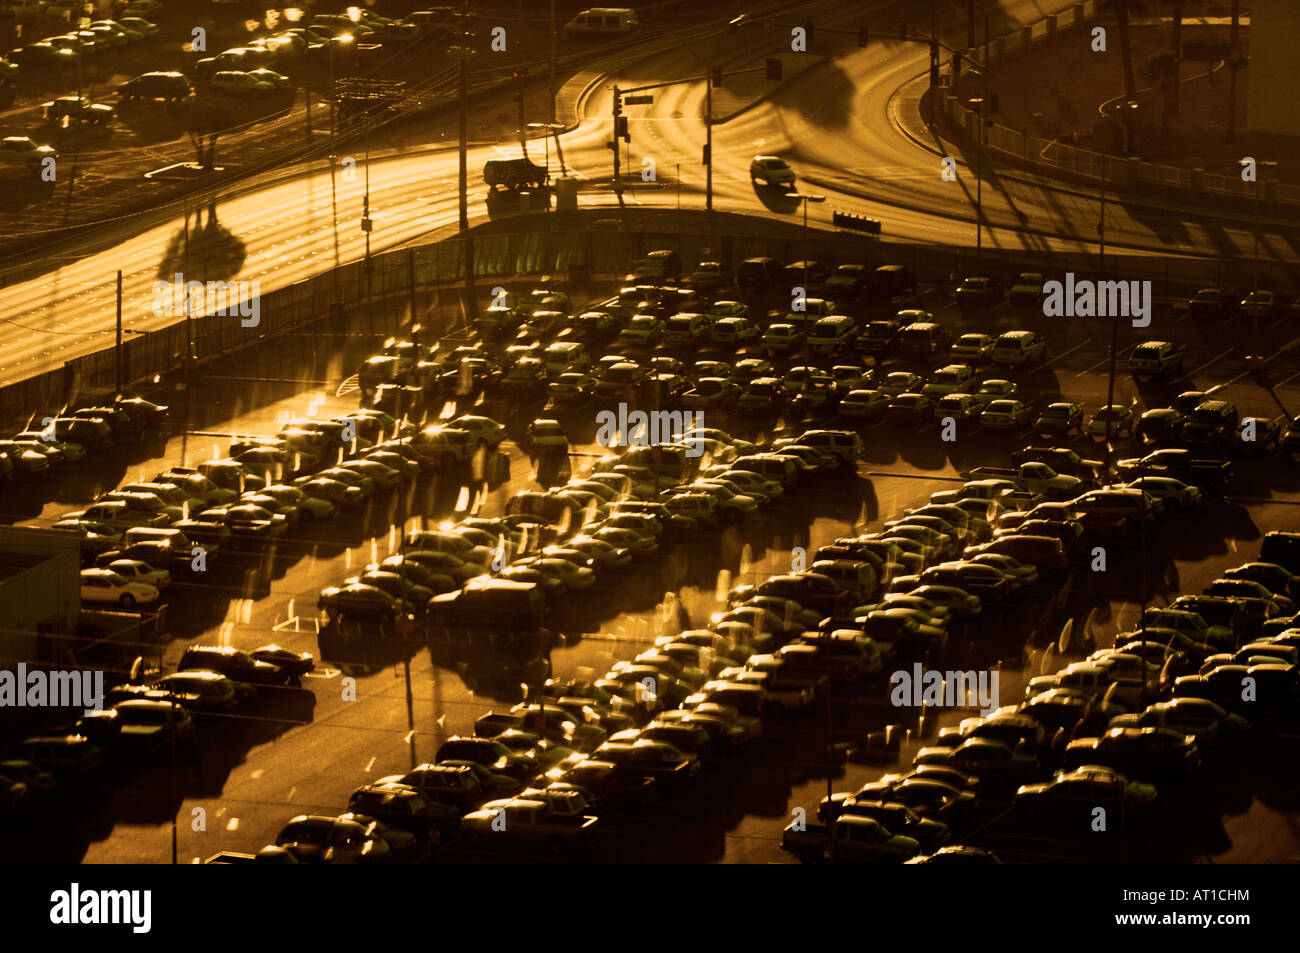 Stationnement de véhicules complets, à la jonction de l'autoroute près d'un aéroport en début de matinée l'aube lumière dorée Banque D'Images